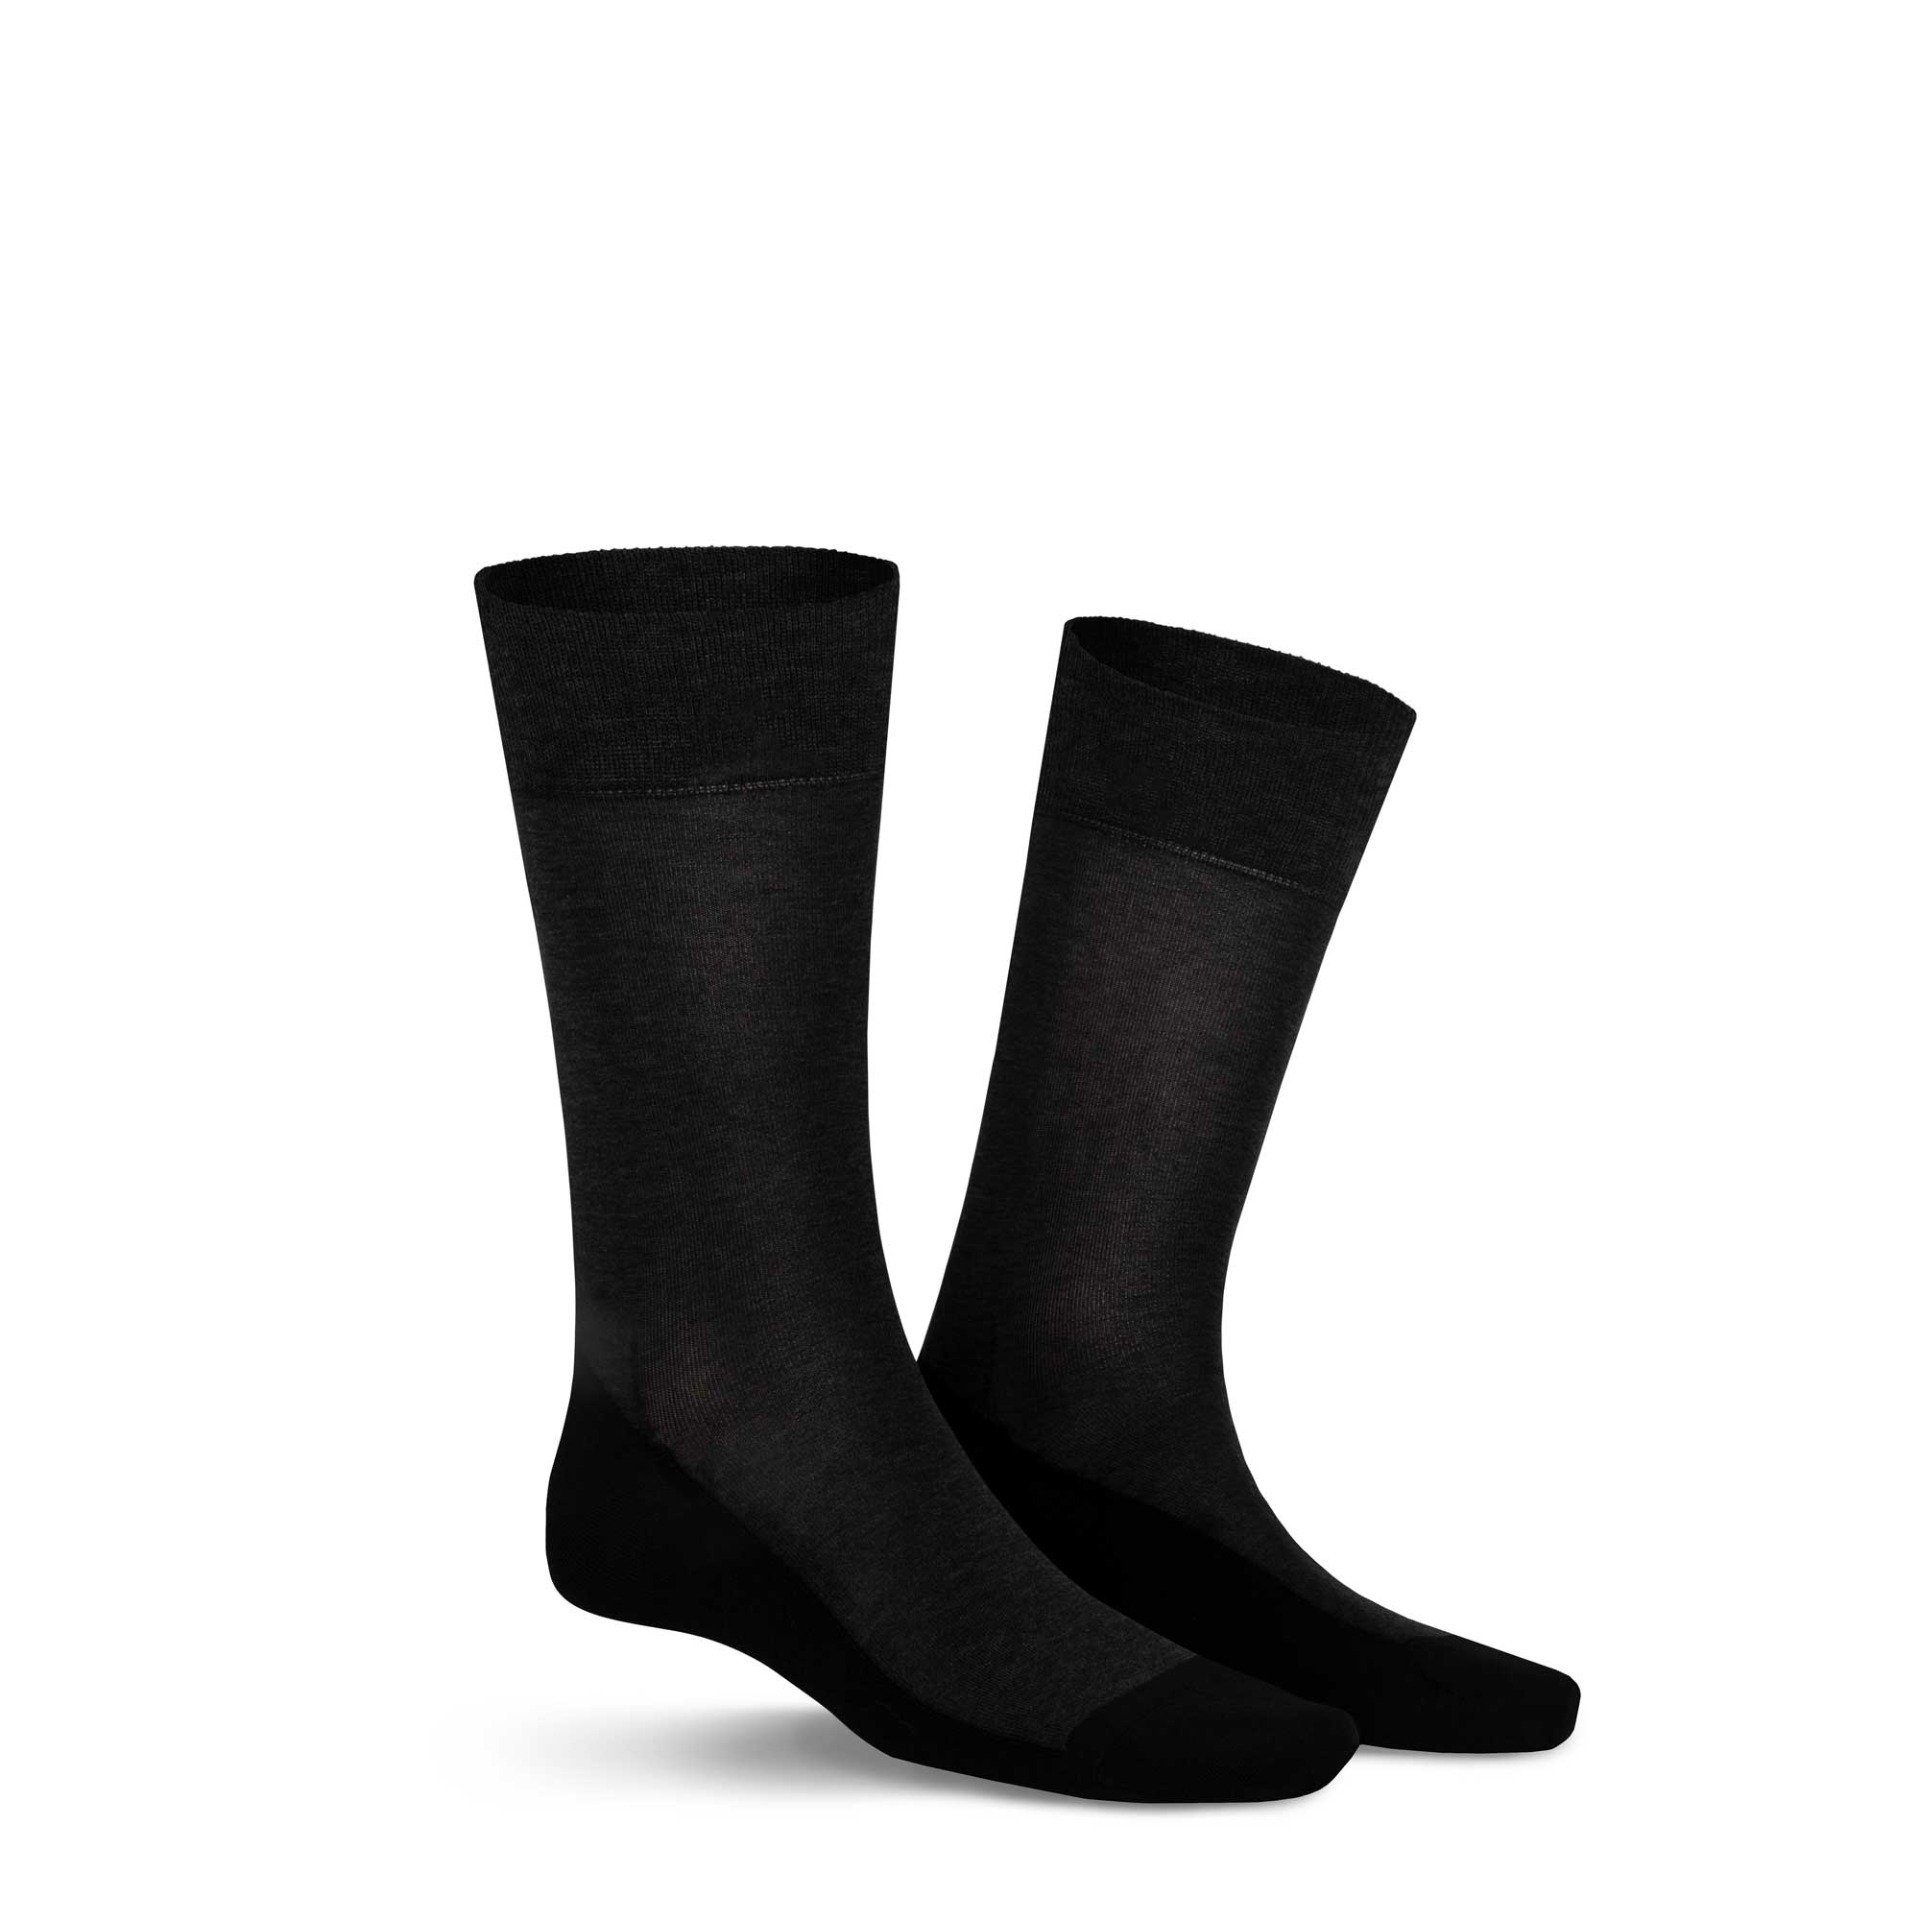 KUNERT Basicsocken GEORGE (1-Paar) Herren Socken aus feiner Baumwolle mit Funktionssohle Anthra mel. 8130